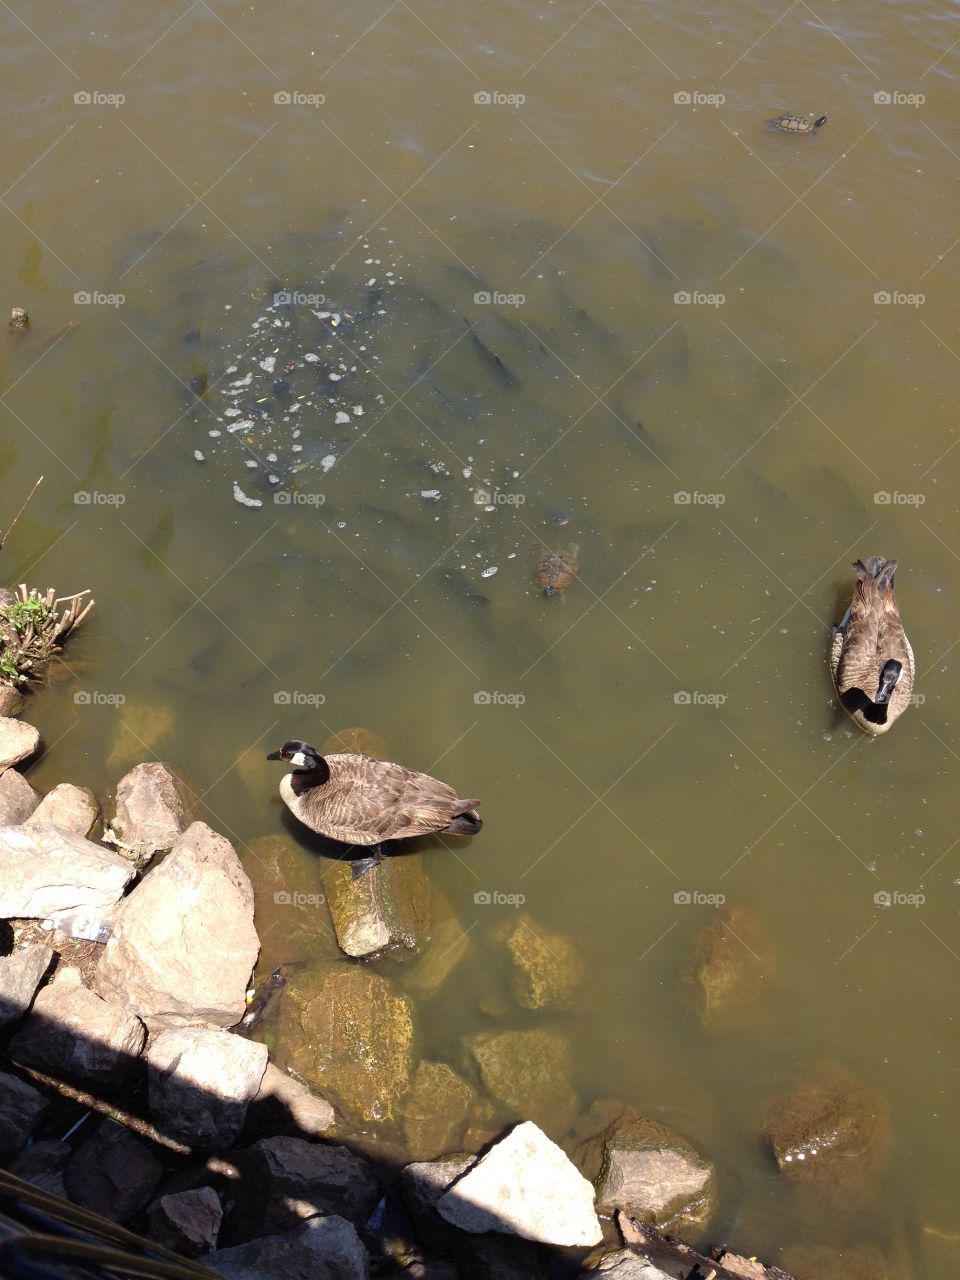 Catfish swarm around ducks in a pond 